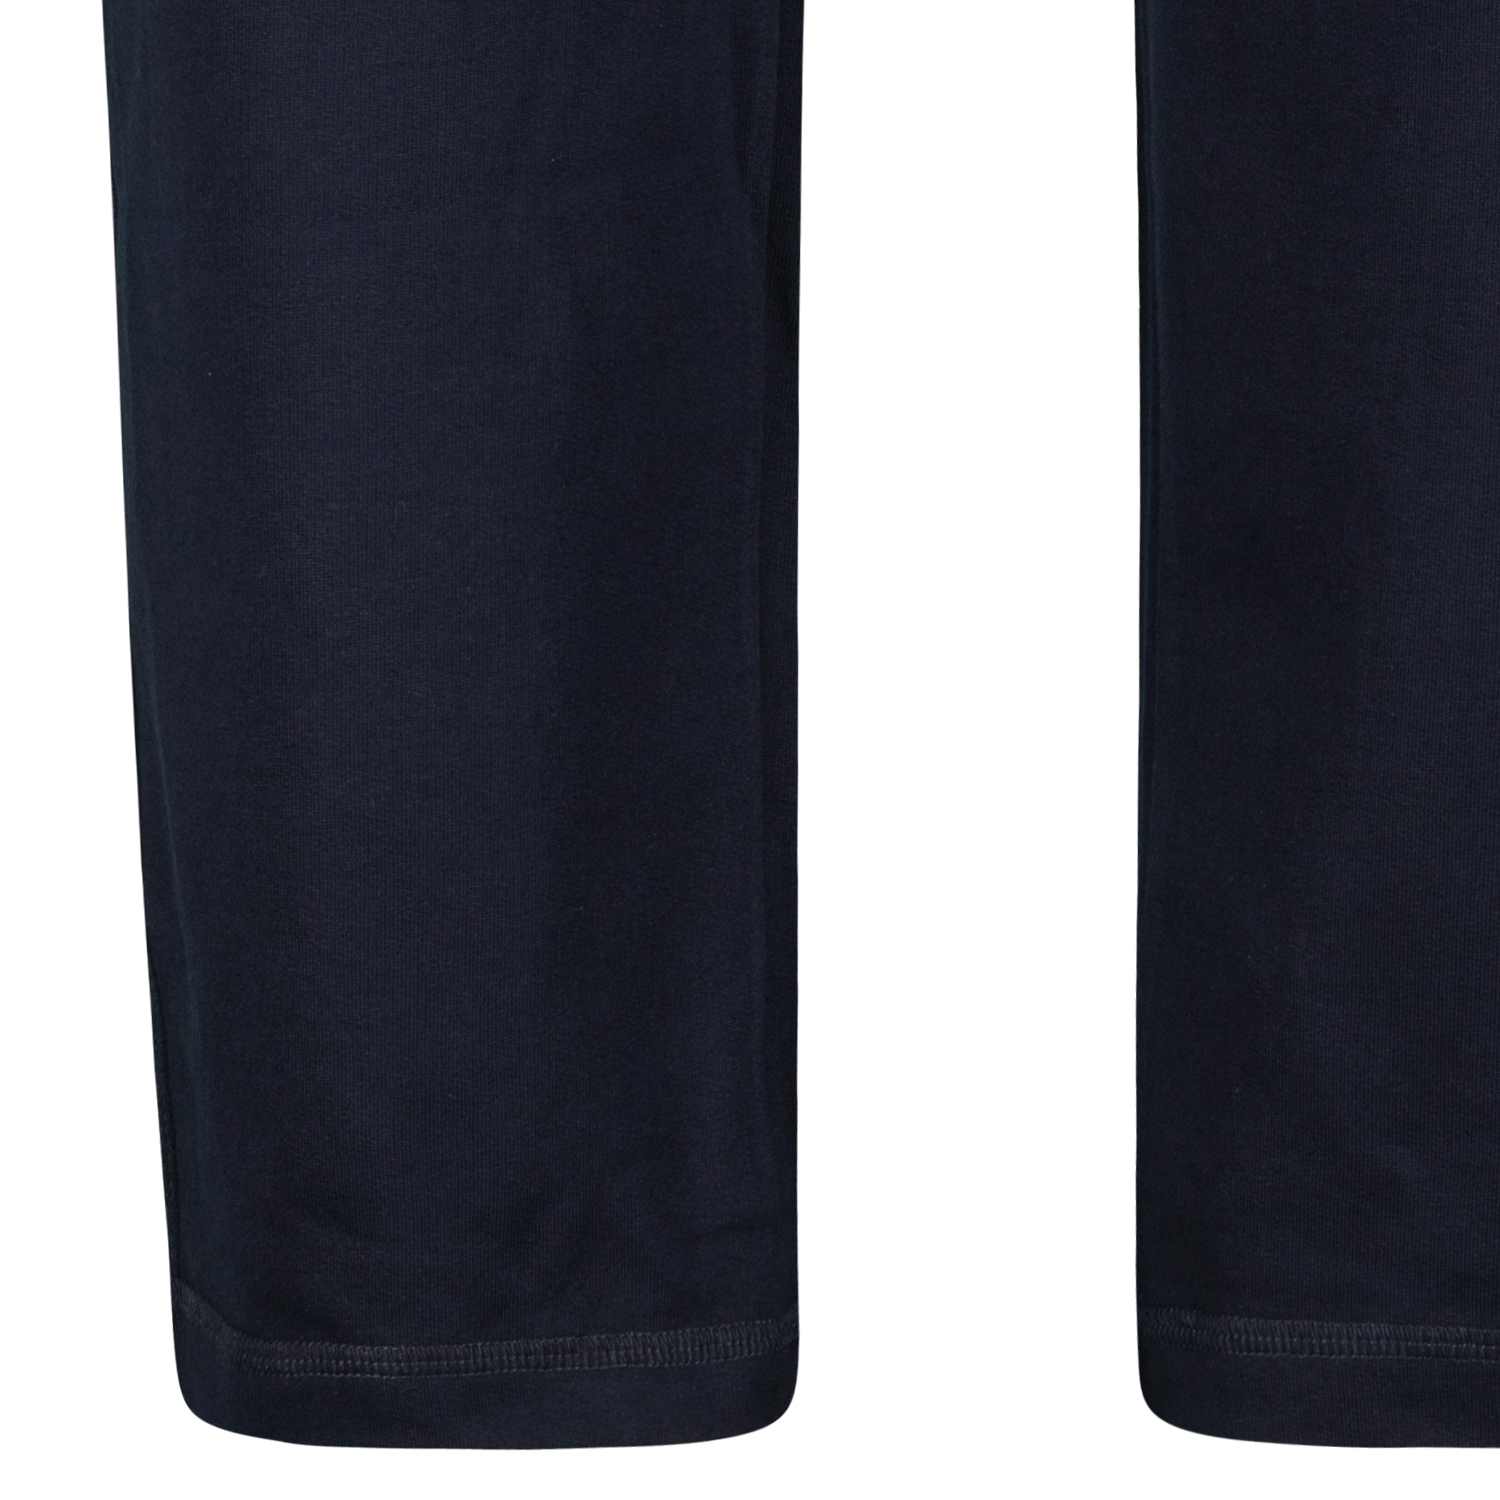 Dunkelblaue Herren Basic Sweat Hose von Ahorn Sportswear in großen Größen bis 10XL